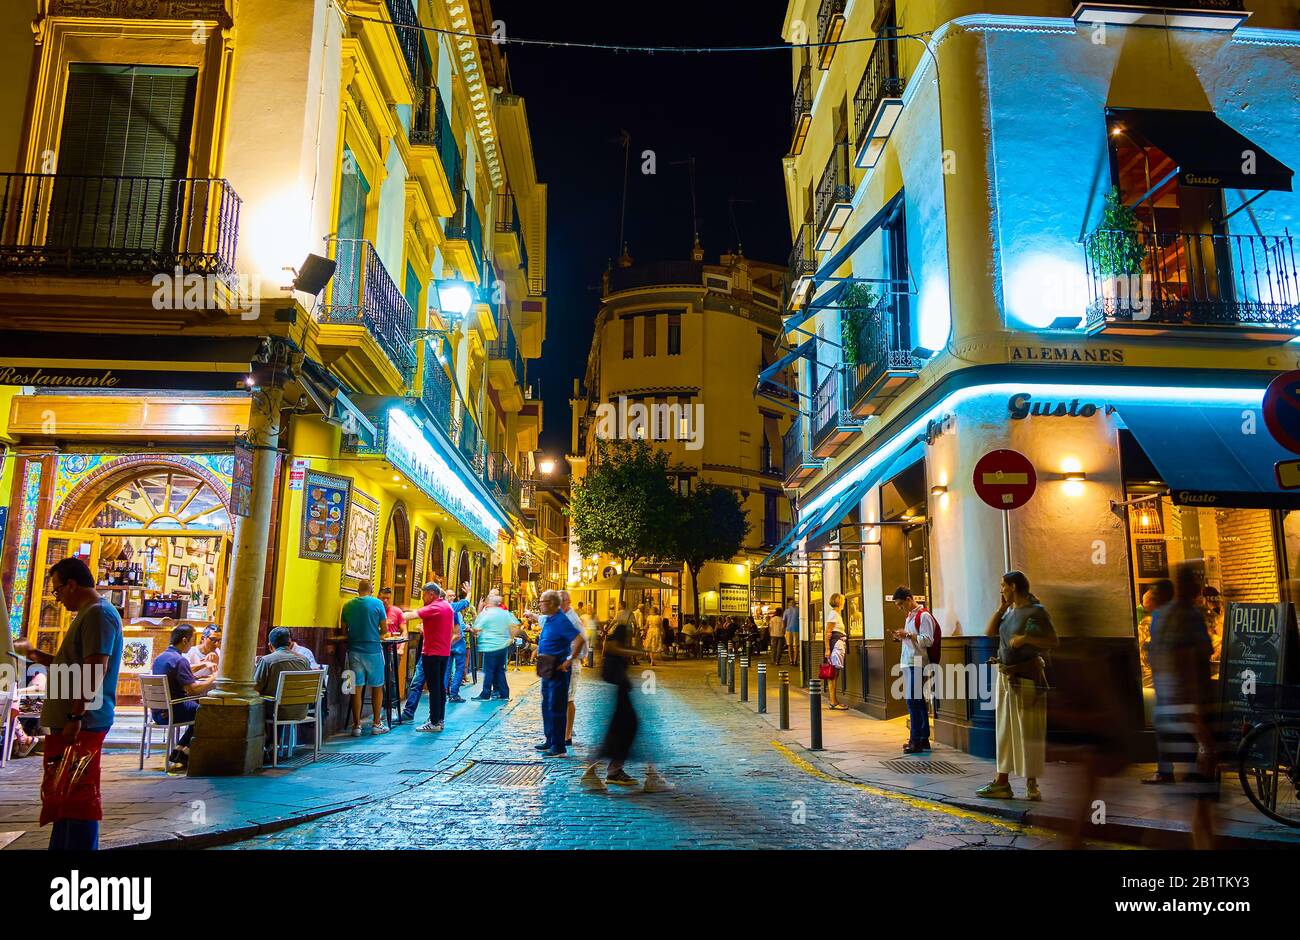 Siviglia, SPAGNA - 1 OTTOBRE 2019: La notte è un momento molto affollato, i turisti e la gente del posto camminano per le strade e caffè e ristoranti diventano pieni, sopra Foto Stock